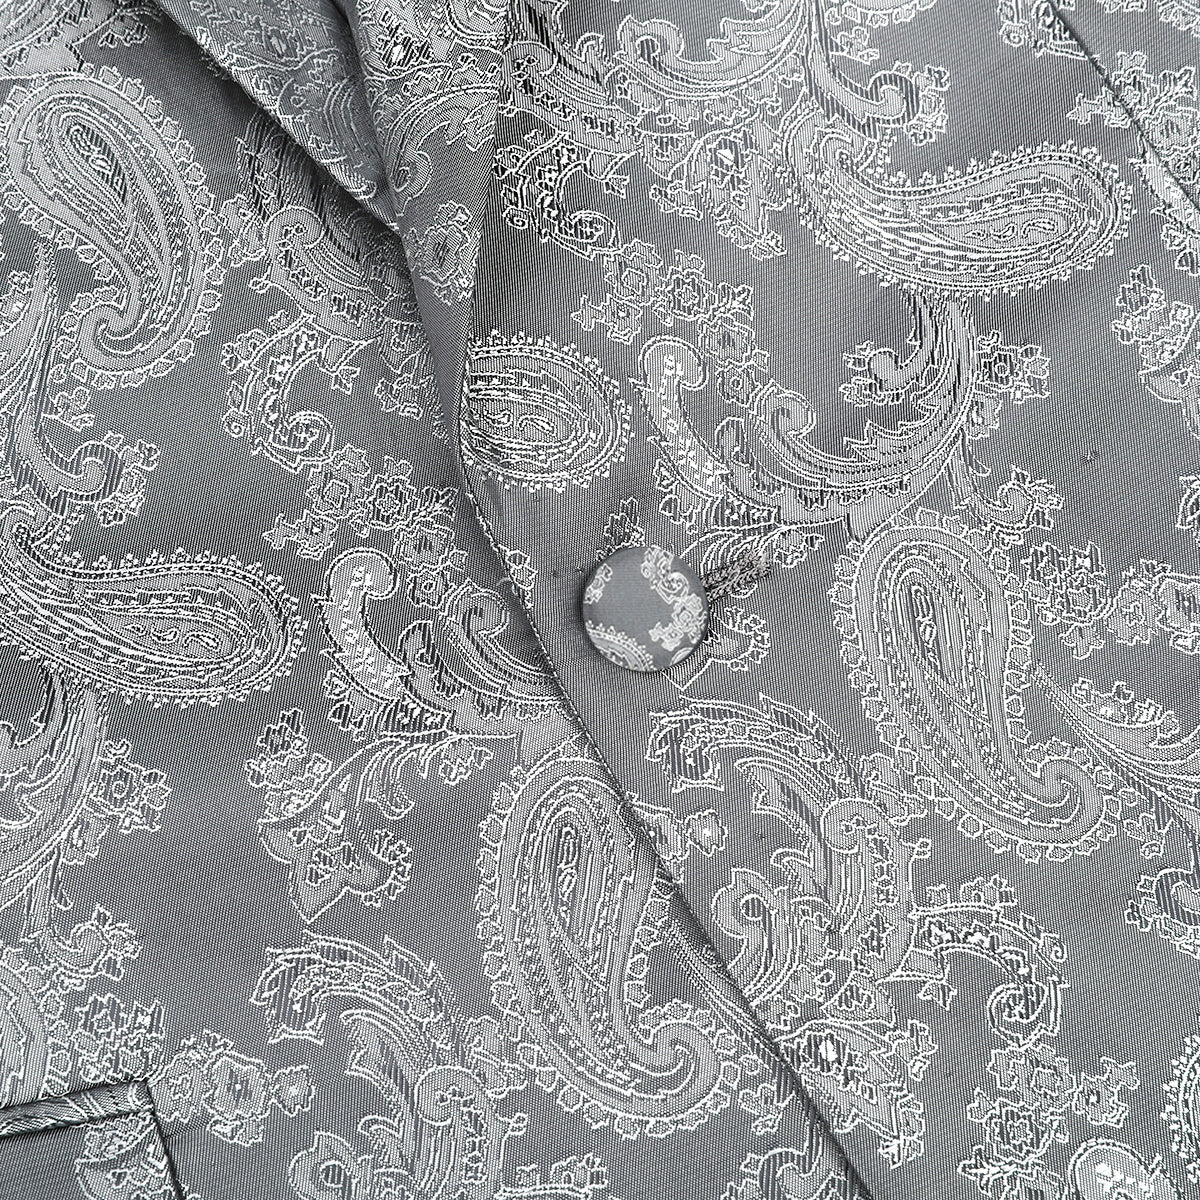 2-Piece Slim Fit Paisley Fashion Suit Grey